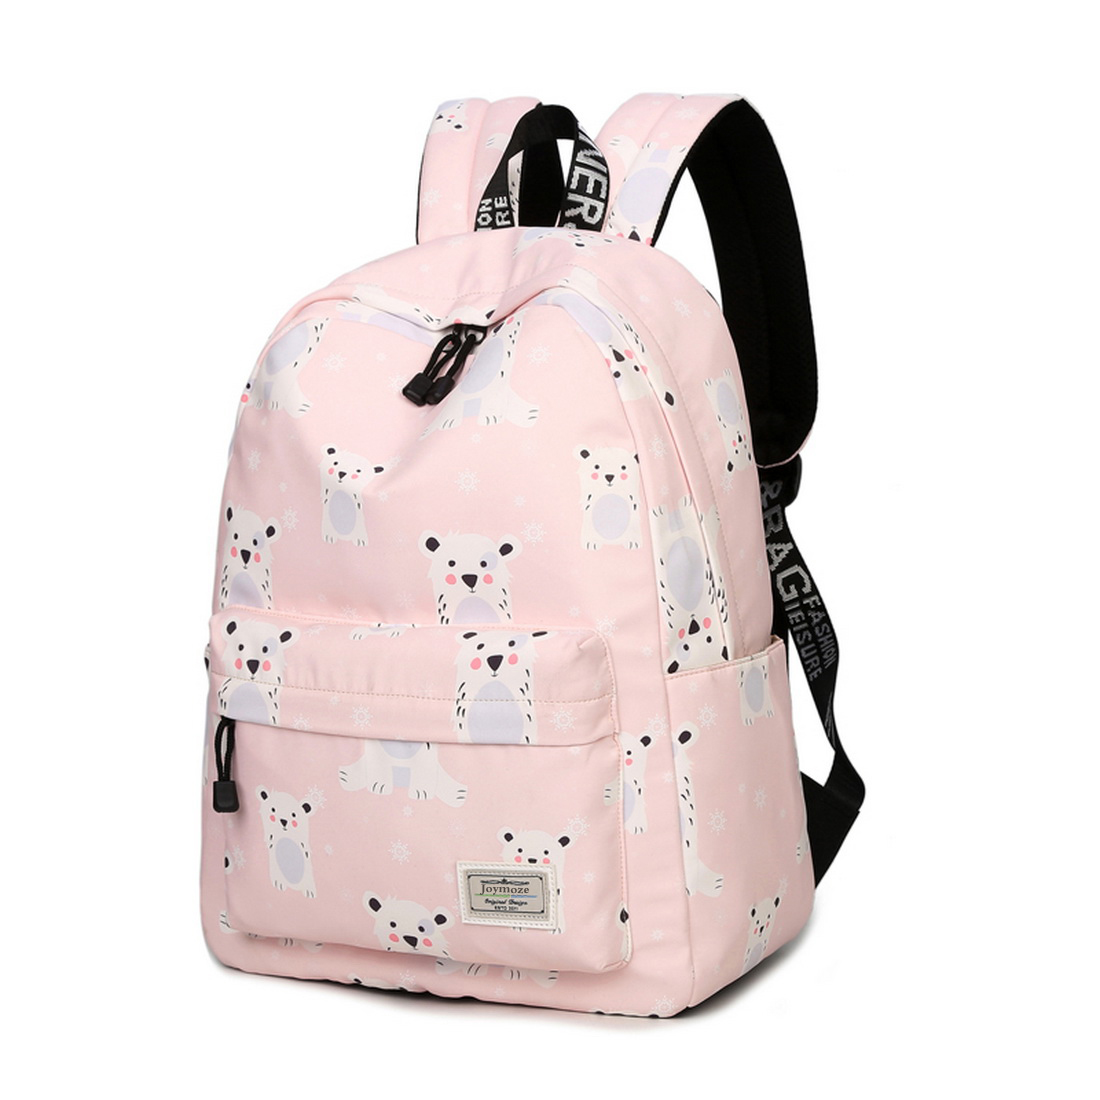 School Backpack Joymoze Waterproof School Backpack For Girls Middle School Cute Bookbag Daypack For Women Pink 843